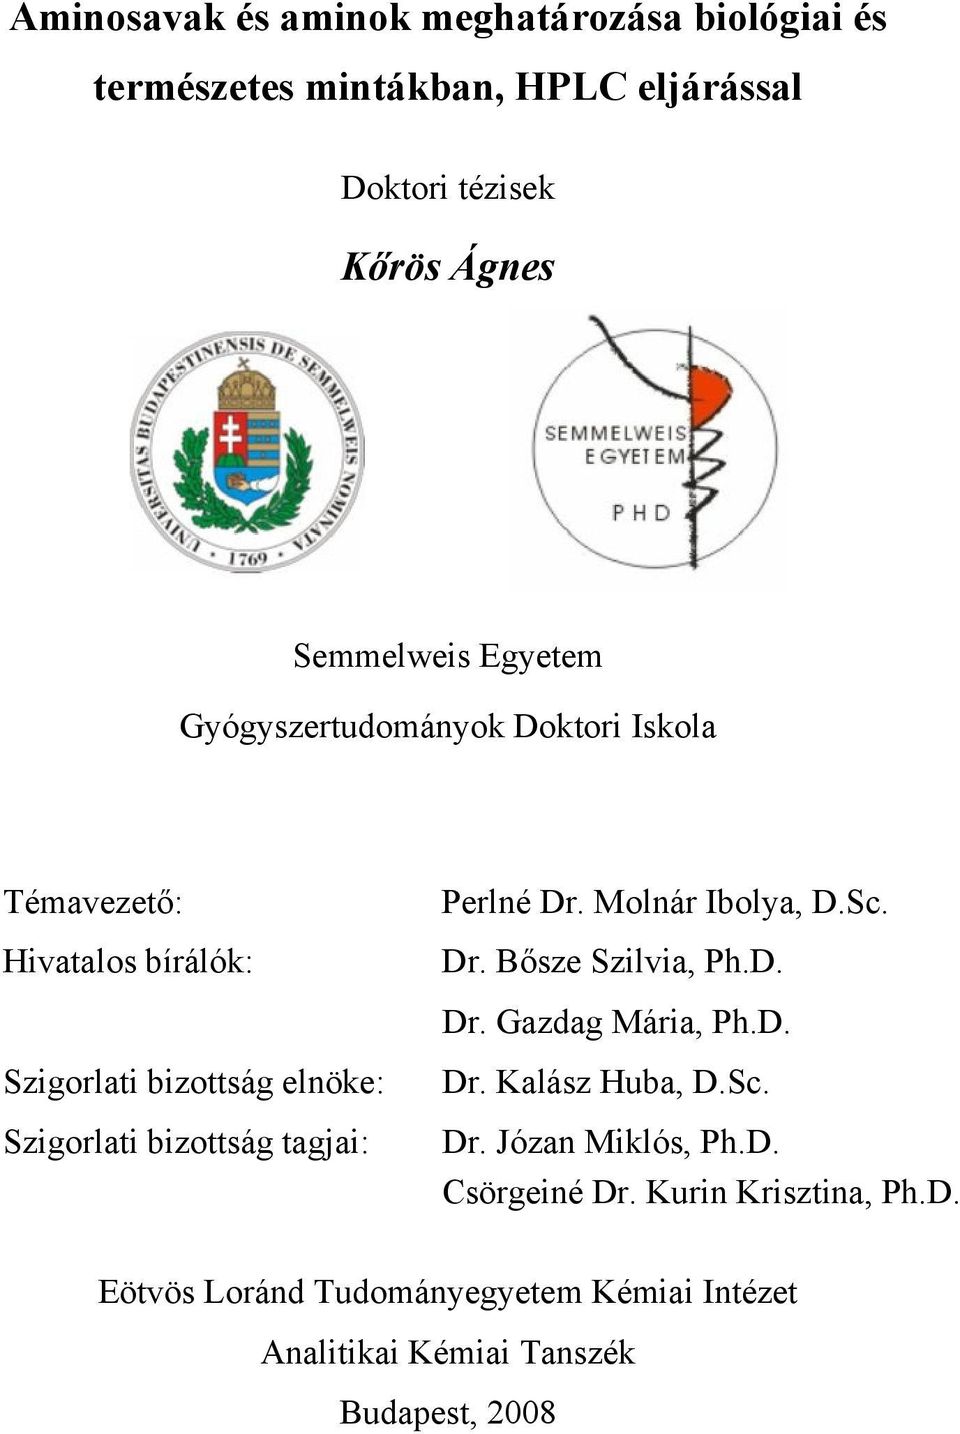 tagjai: Perlné Dr. Molnár Ibolya, D.Sc. Dr. Bősze Szilvia, Ph.D. Dr. Gazdag Mária, Ph.D. Dr. Kalász Huba, D.Sc. Dr. Józan Miklós, Ph.